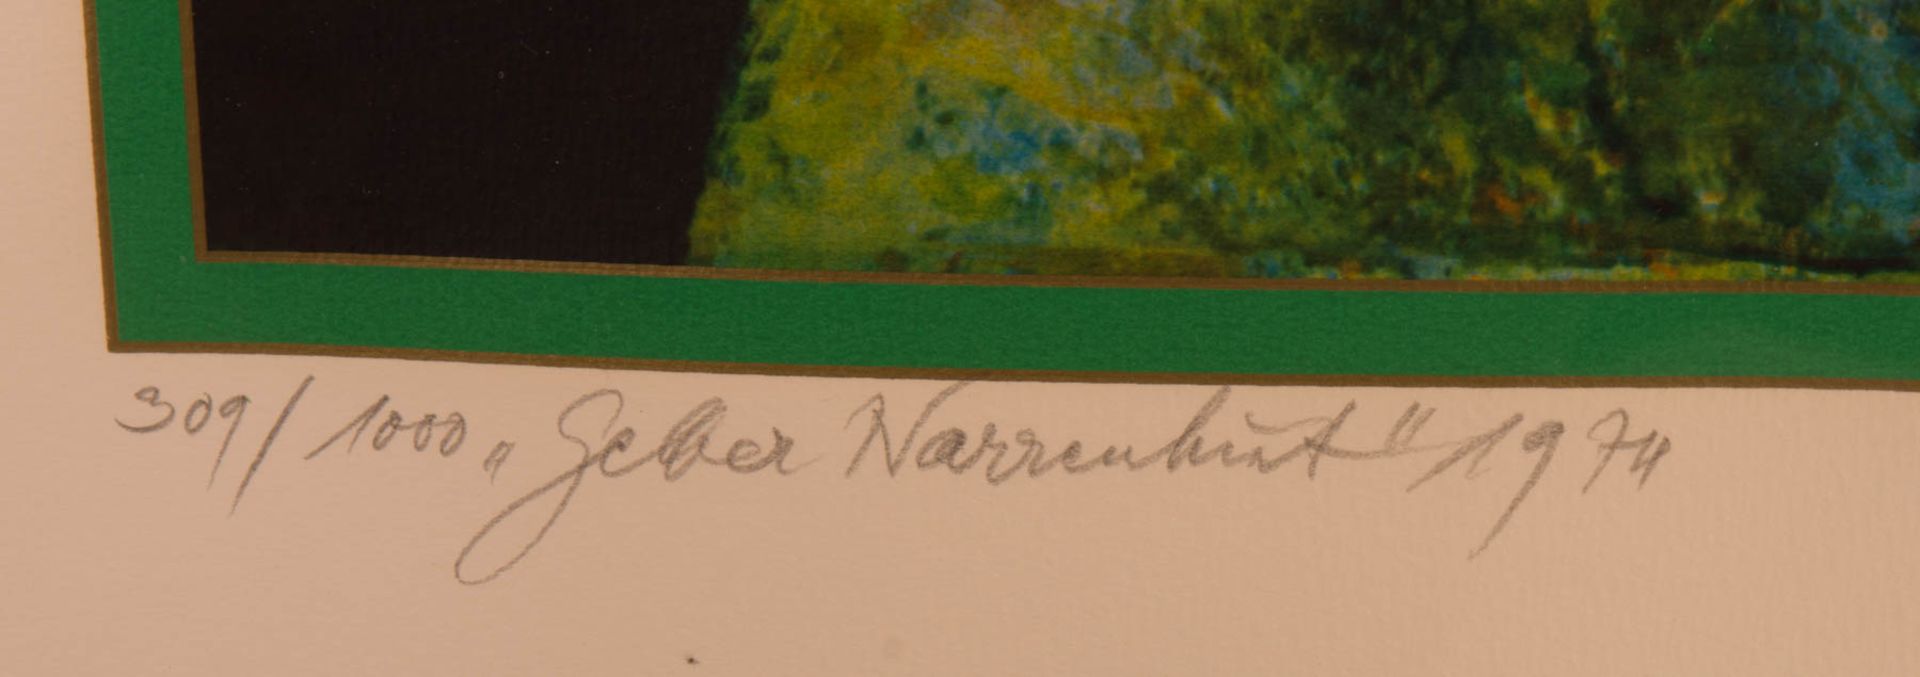 Rudolf Hausner, 'Gelber Narrenhut', Farbdruck, 1974. - Bild 2 aus 8